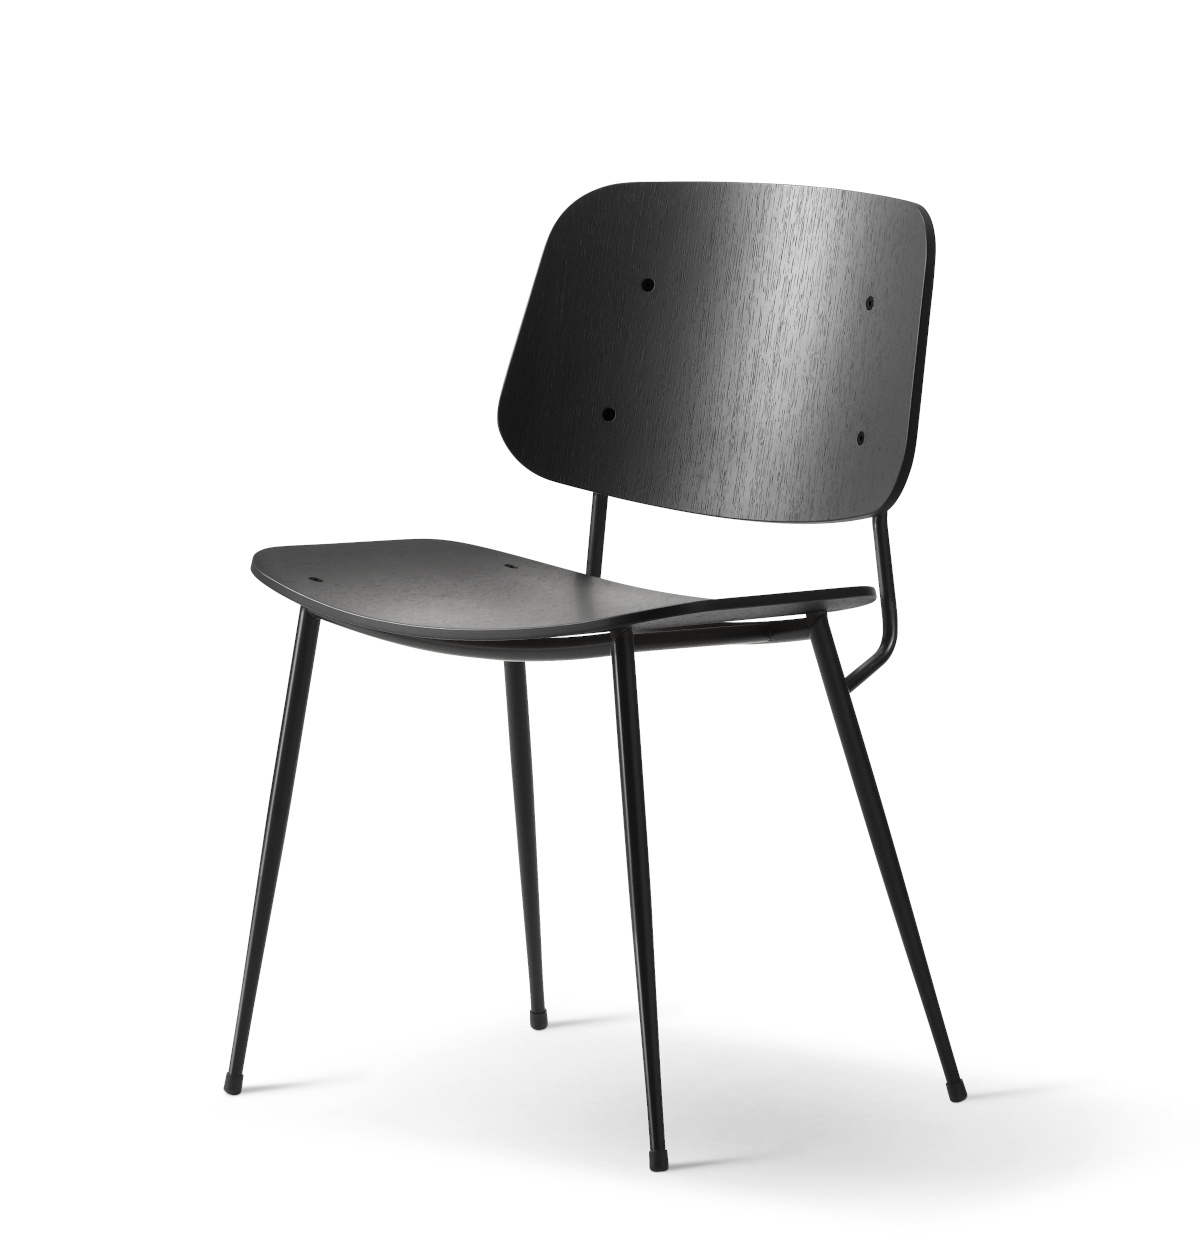 Søborg Metal Base Stuhl, chrom / eiche lackiert